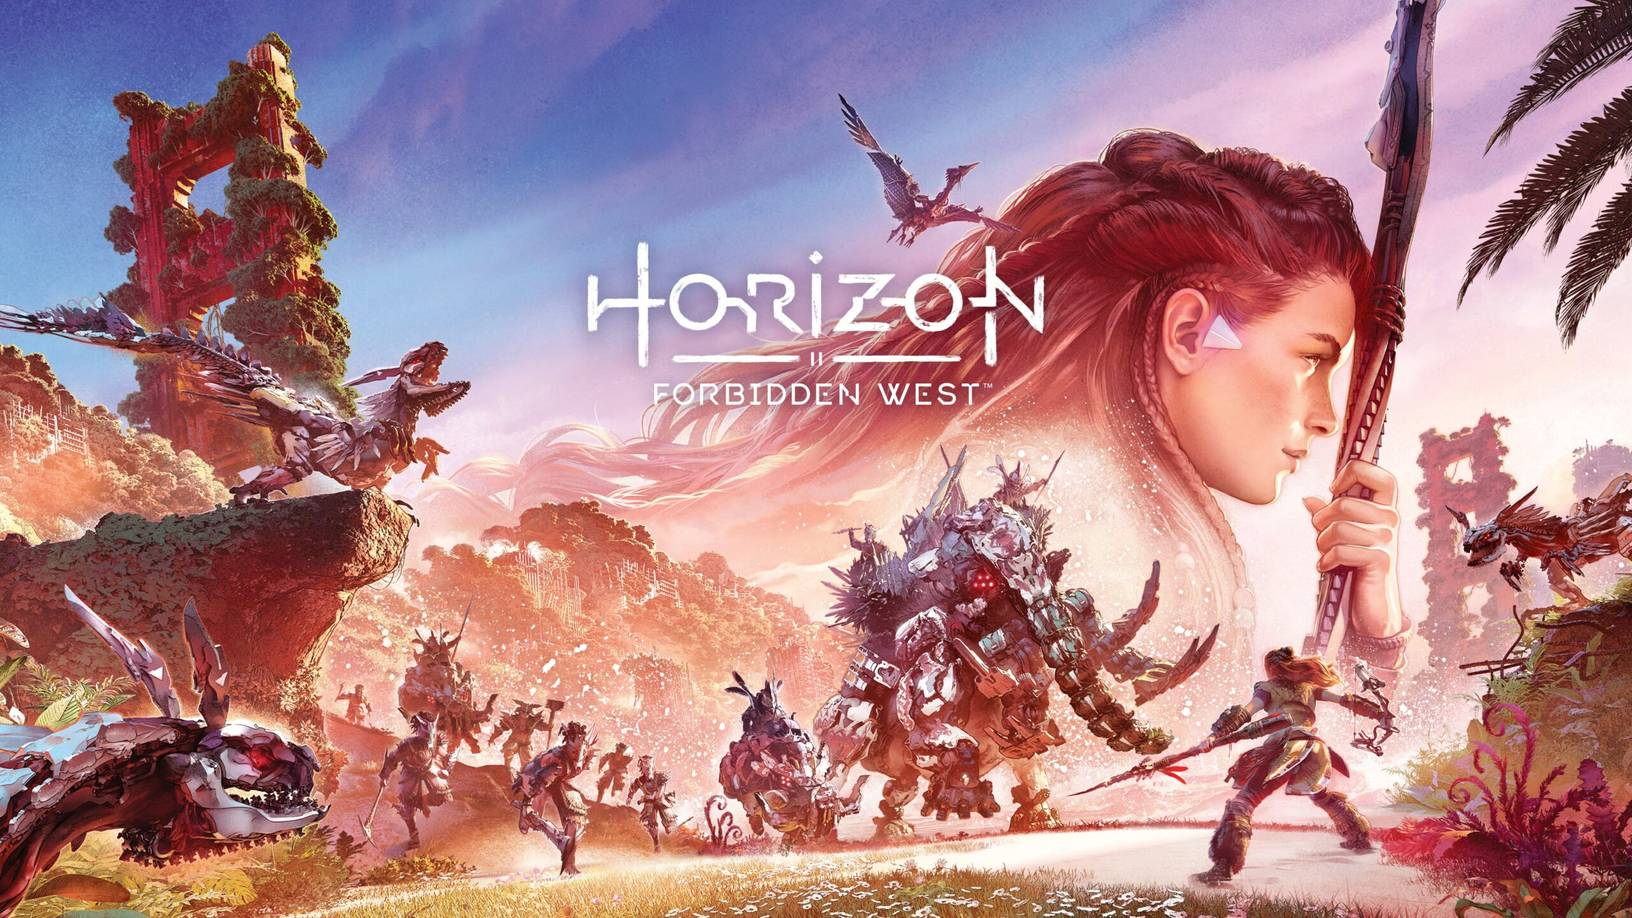 Jogamos Horizon Forbidden West: As primeiras impressões